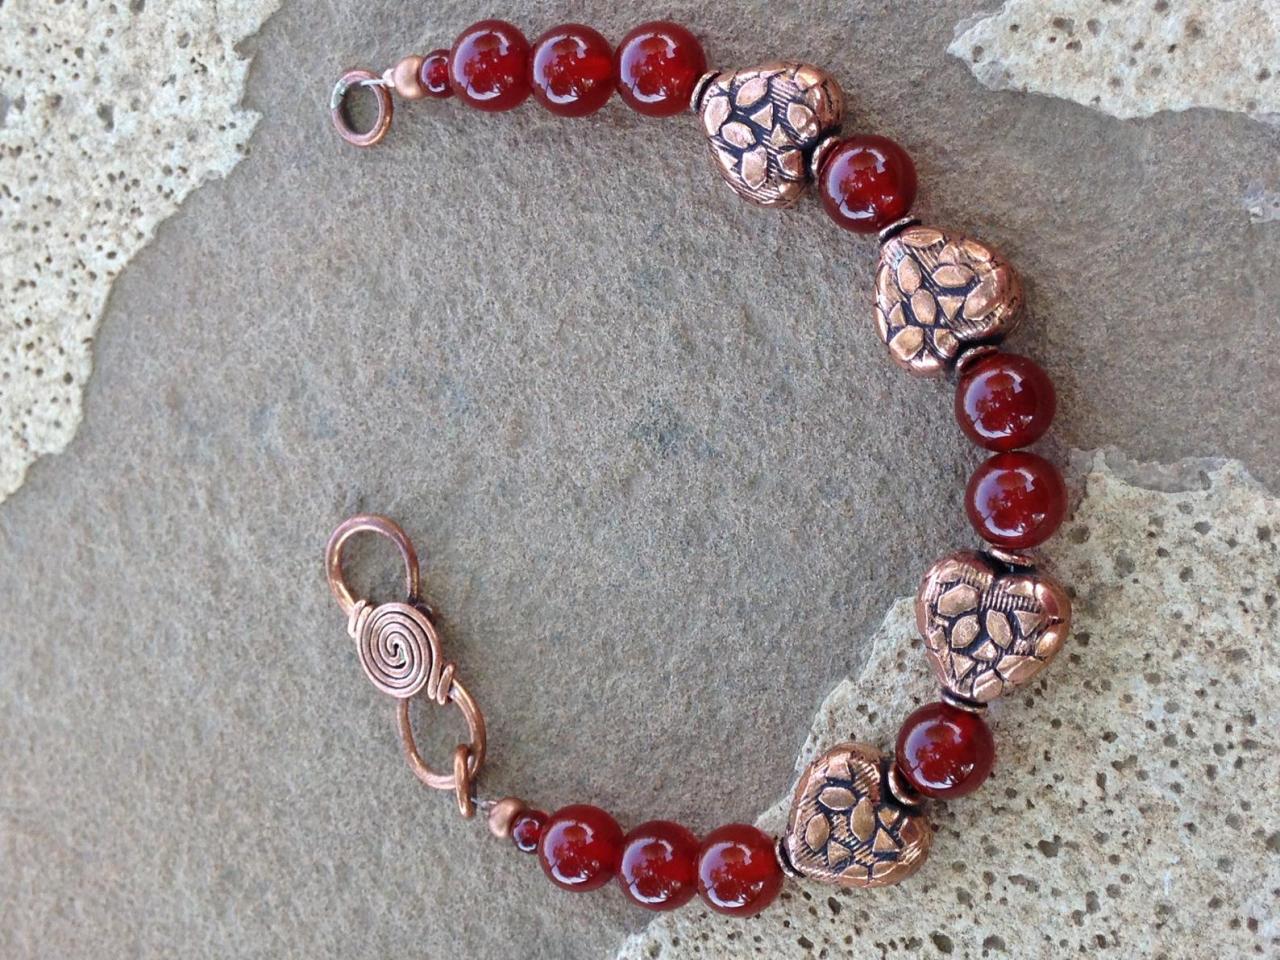 8" Carnelian And Copper Bracelet/carnelian Beaded Bracelet/copper Beaded Bracelet/copper Jewelry/carnelian Jewelry/boho Jewelry